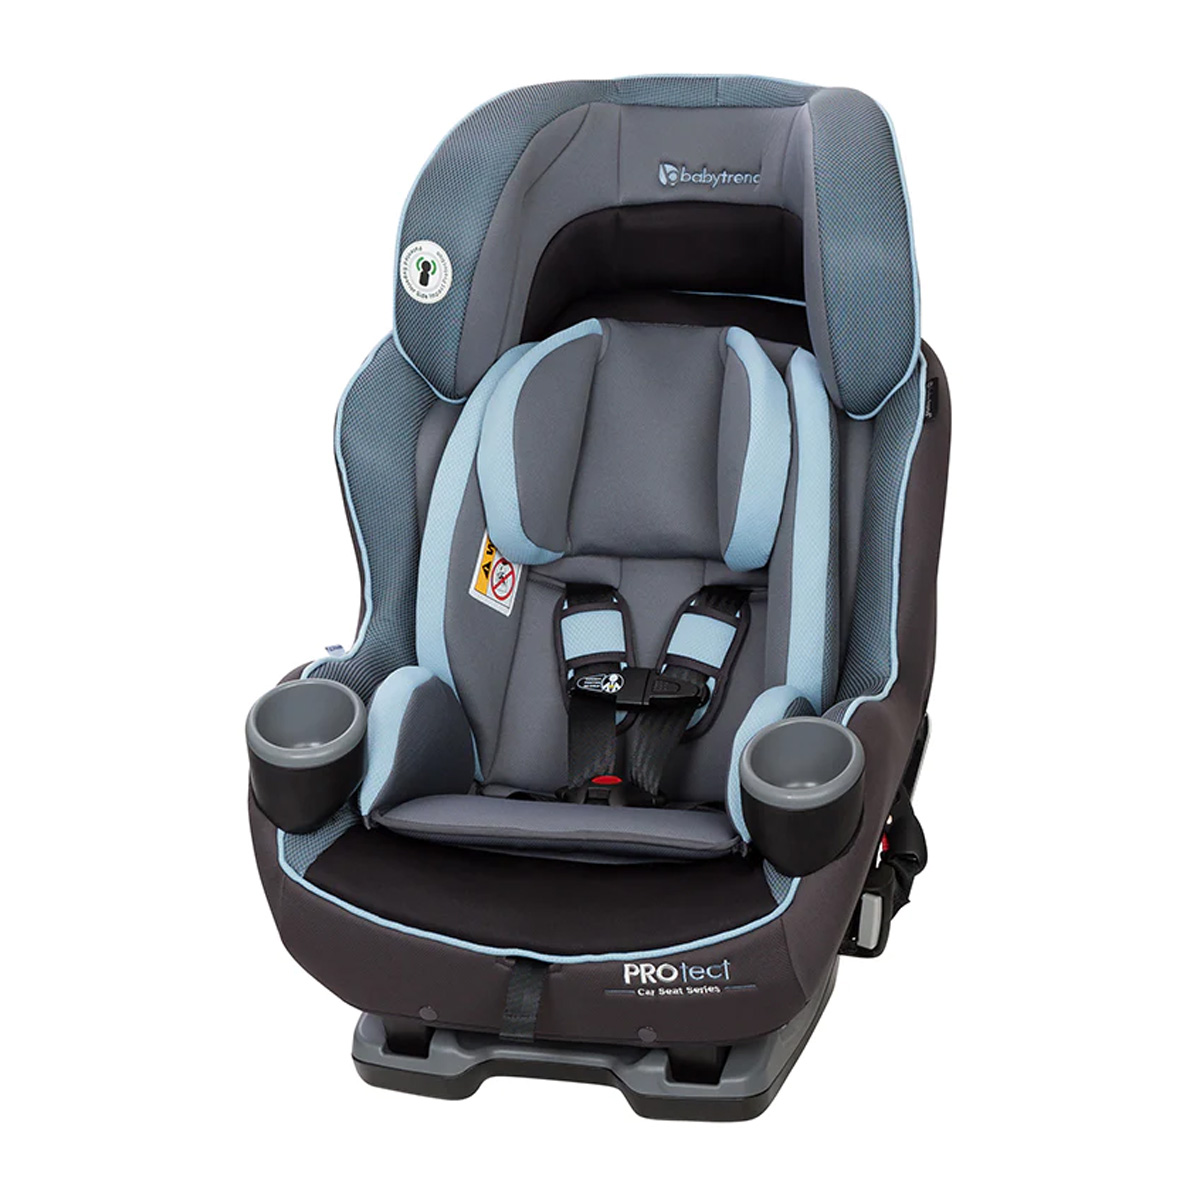 כיסא בטיחות בייבי טרנד פרמייר פלוס – BabyTrend Premiere Plus Convertible Car Seat